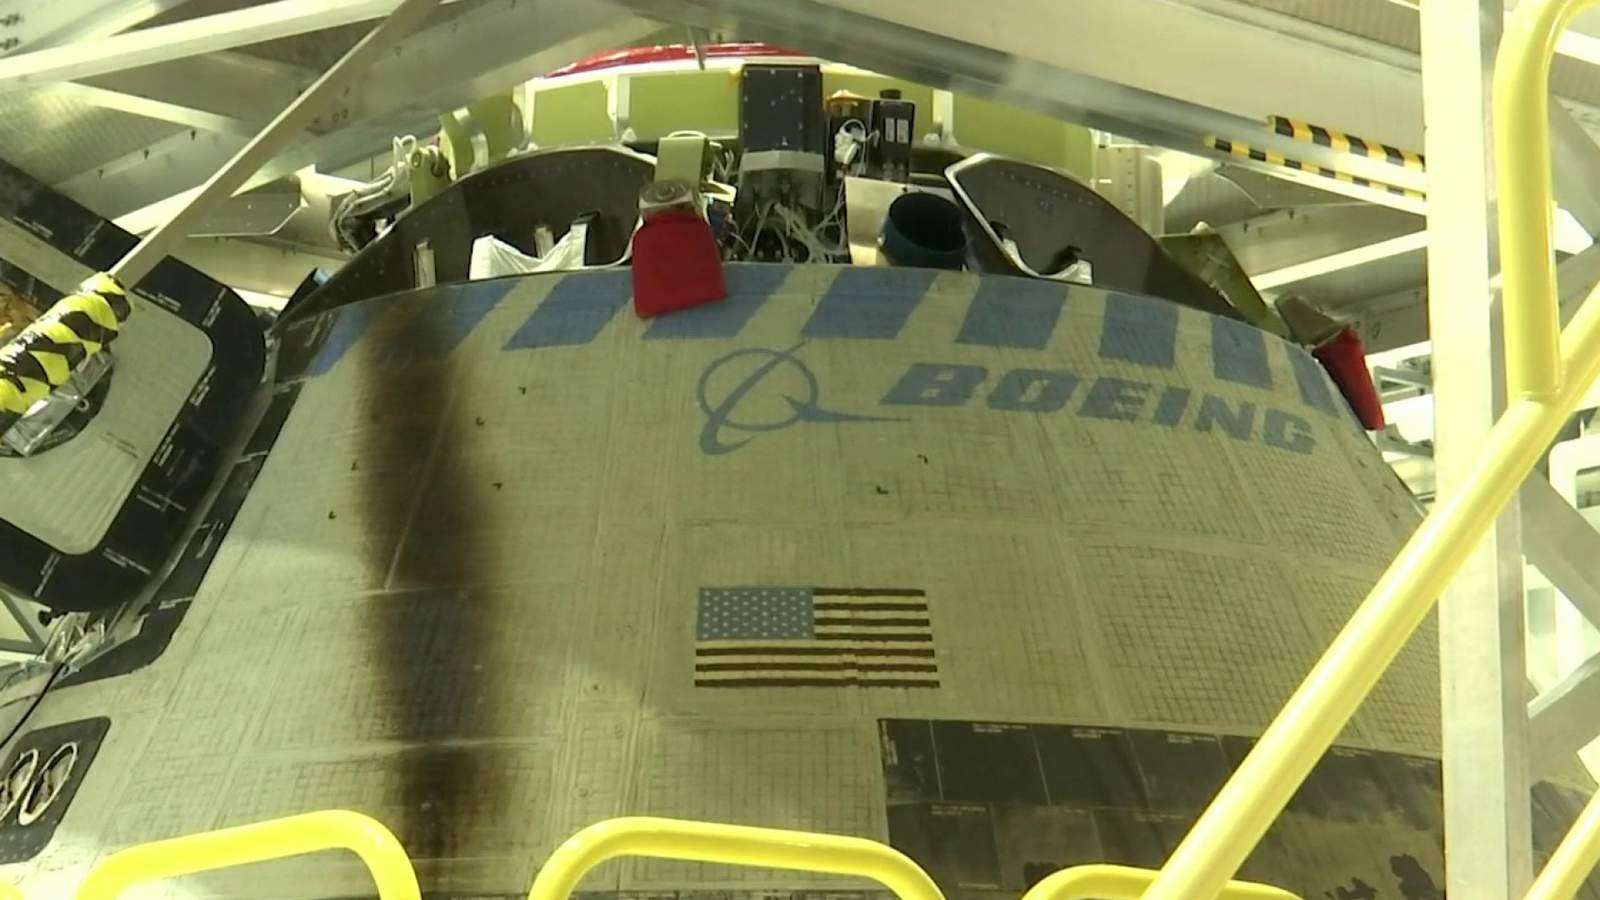 Starliner spacecraft back at Kennedy Space Center, investigative work begins